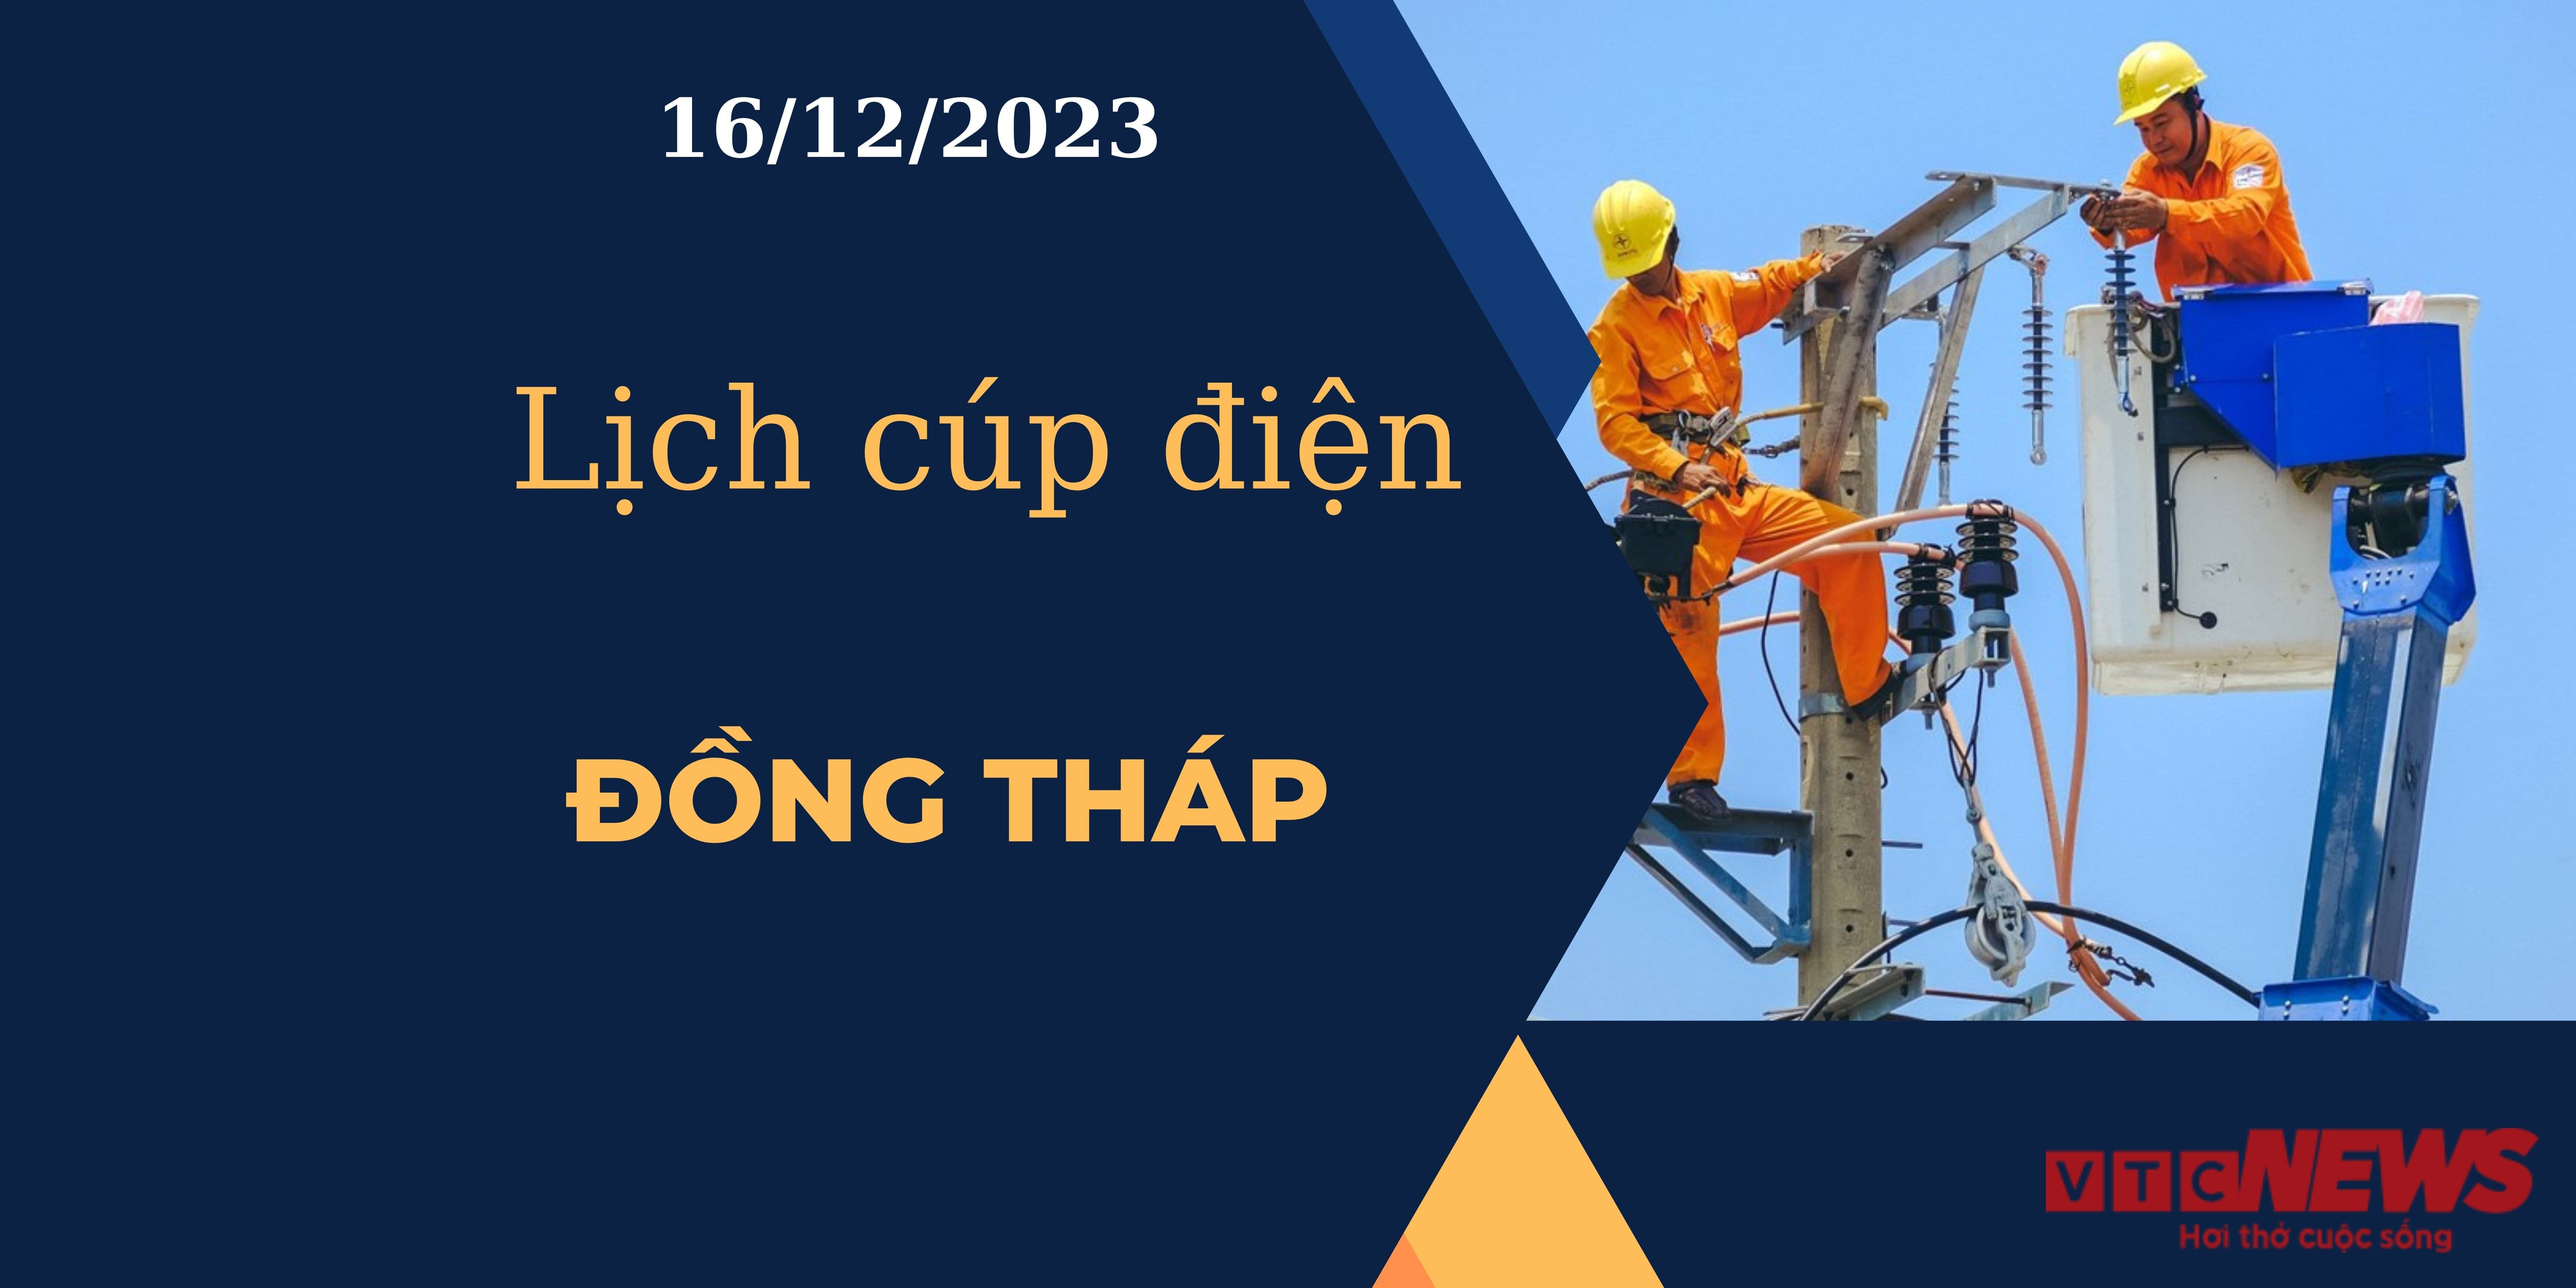 Lịch cúp điện Đồng Tháp ngày 16/12/2023